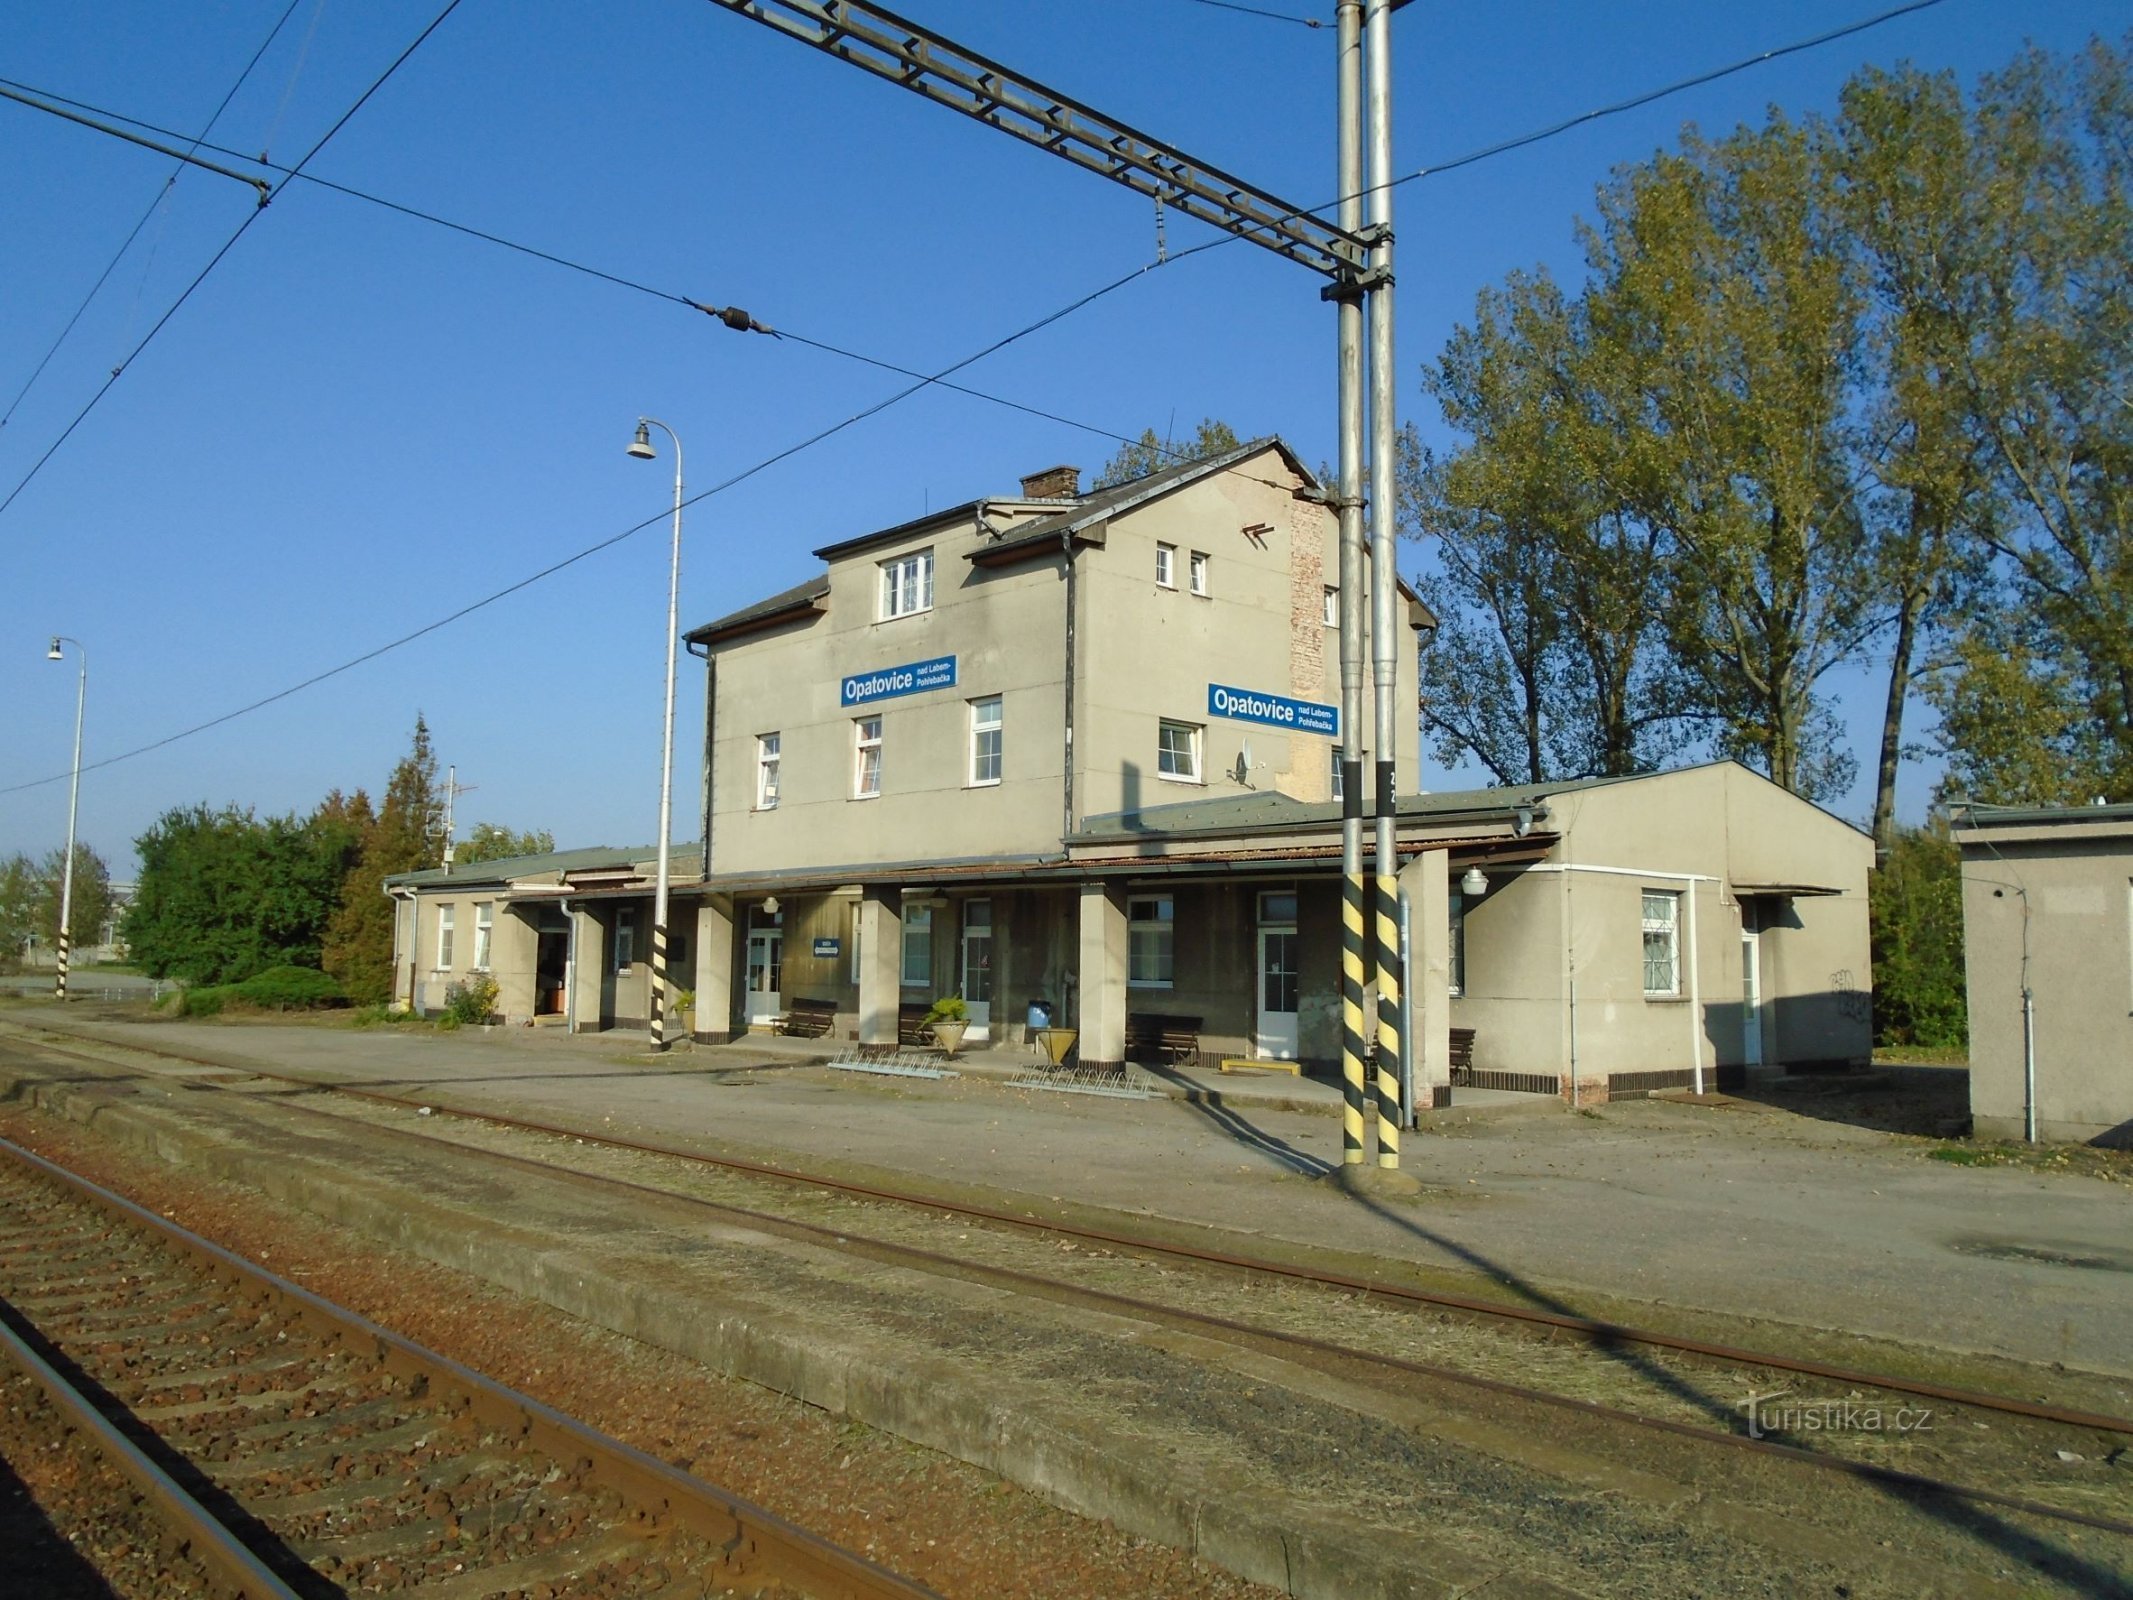 Залізнична станція Opatovice nad Labem-Pohřebačka (30.9.2017 вересня XNUMX р.)